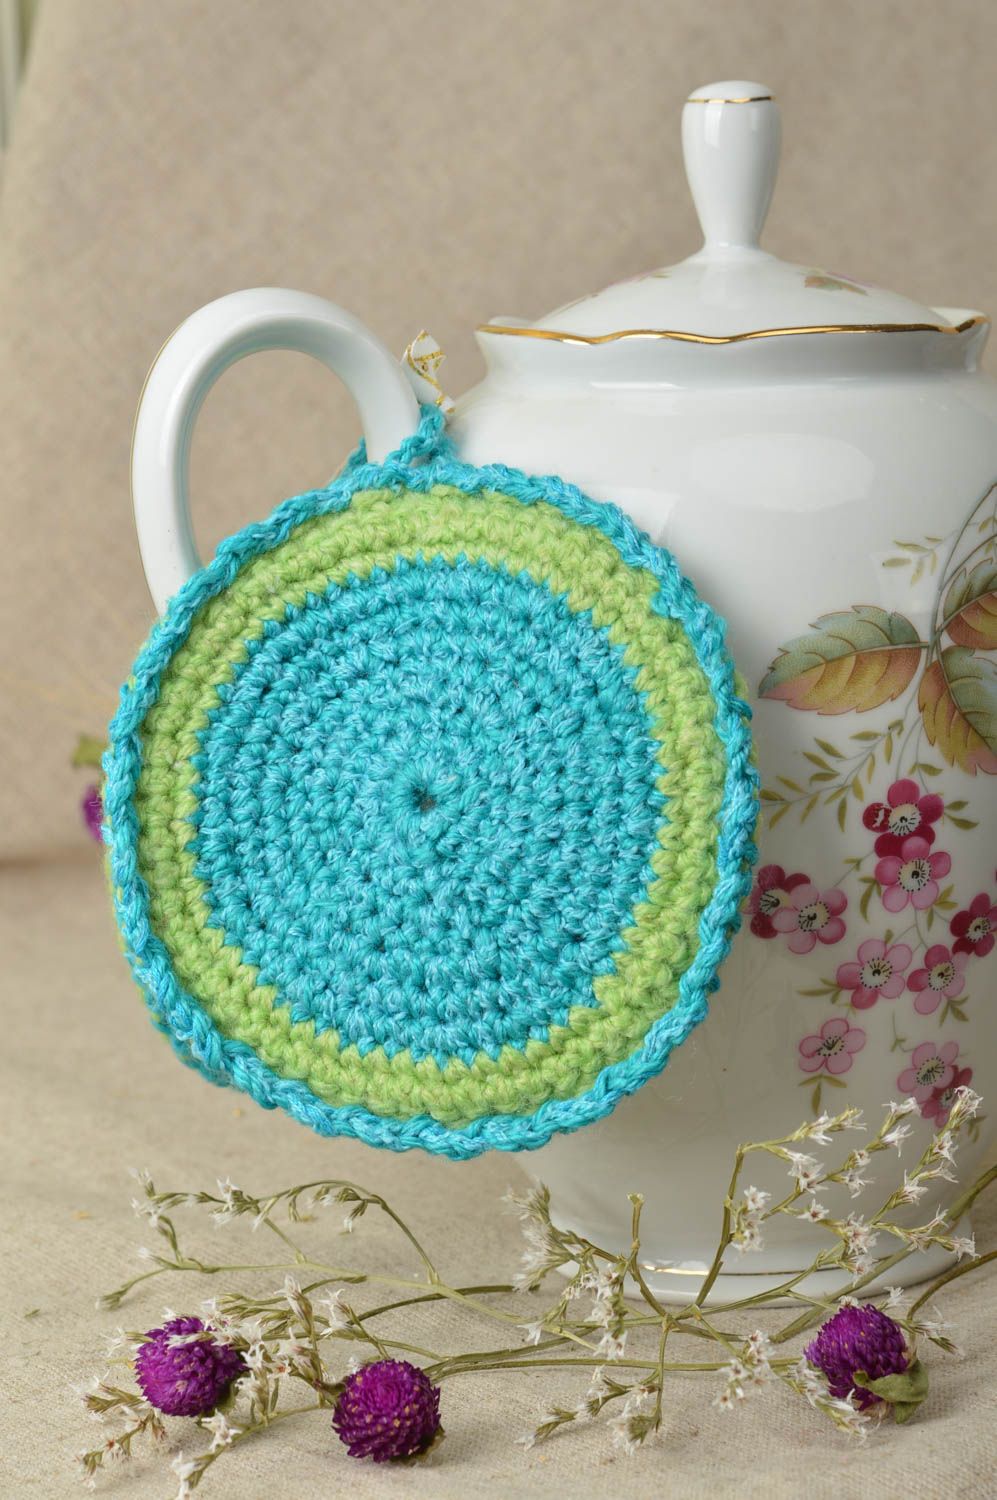 Beautiful handmade crochet potholder pot holder kitchen supplies crochet ideas photo 1